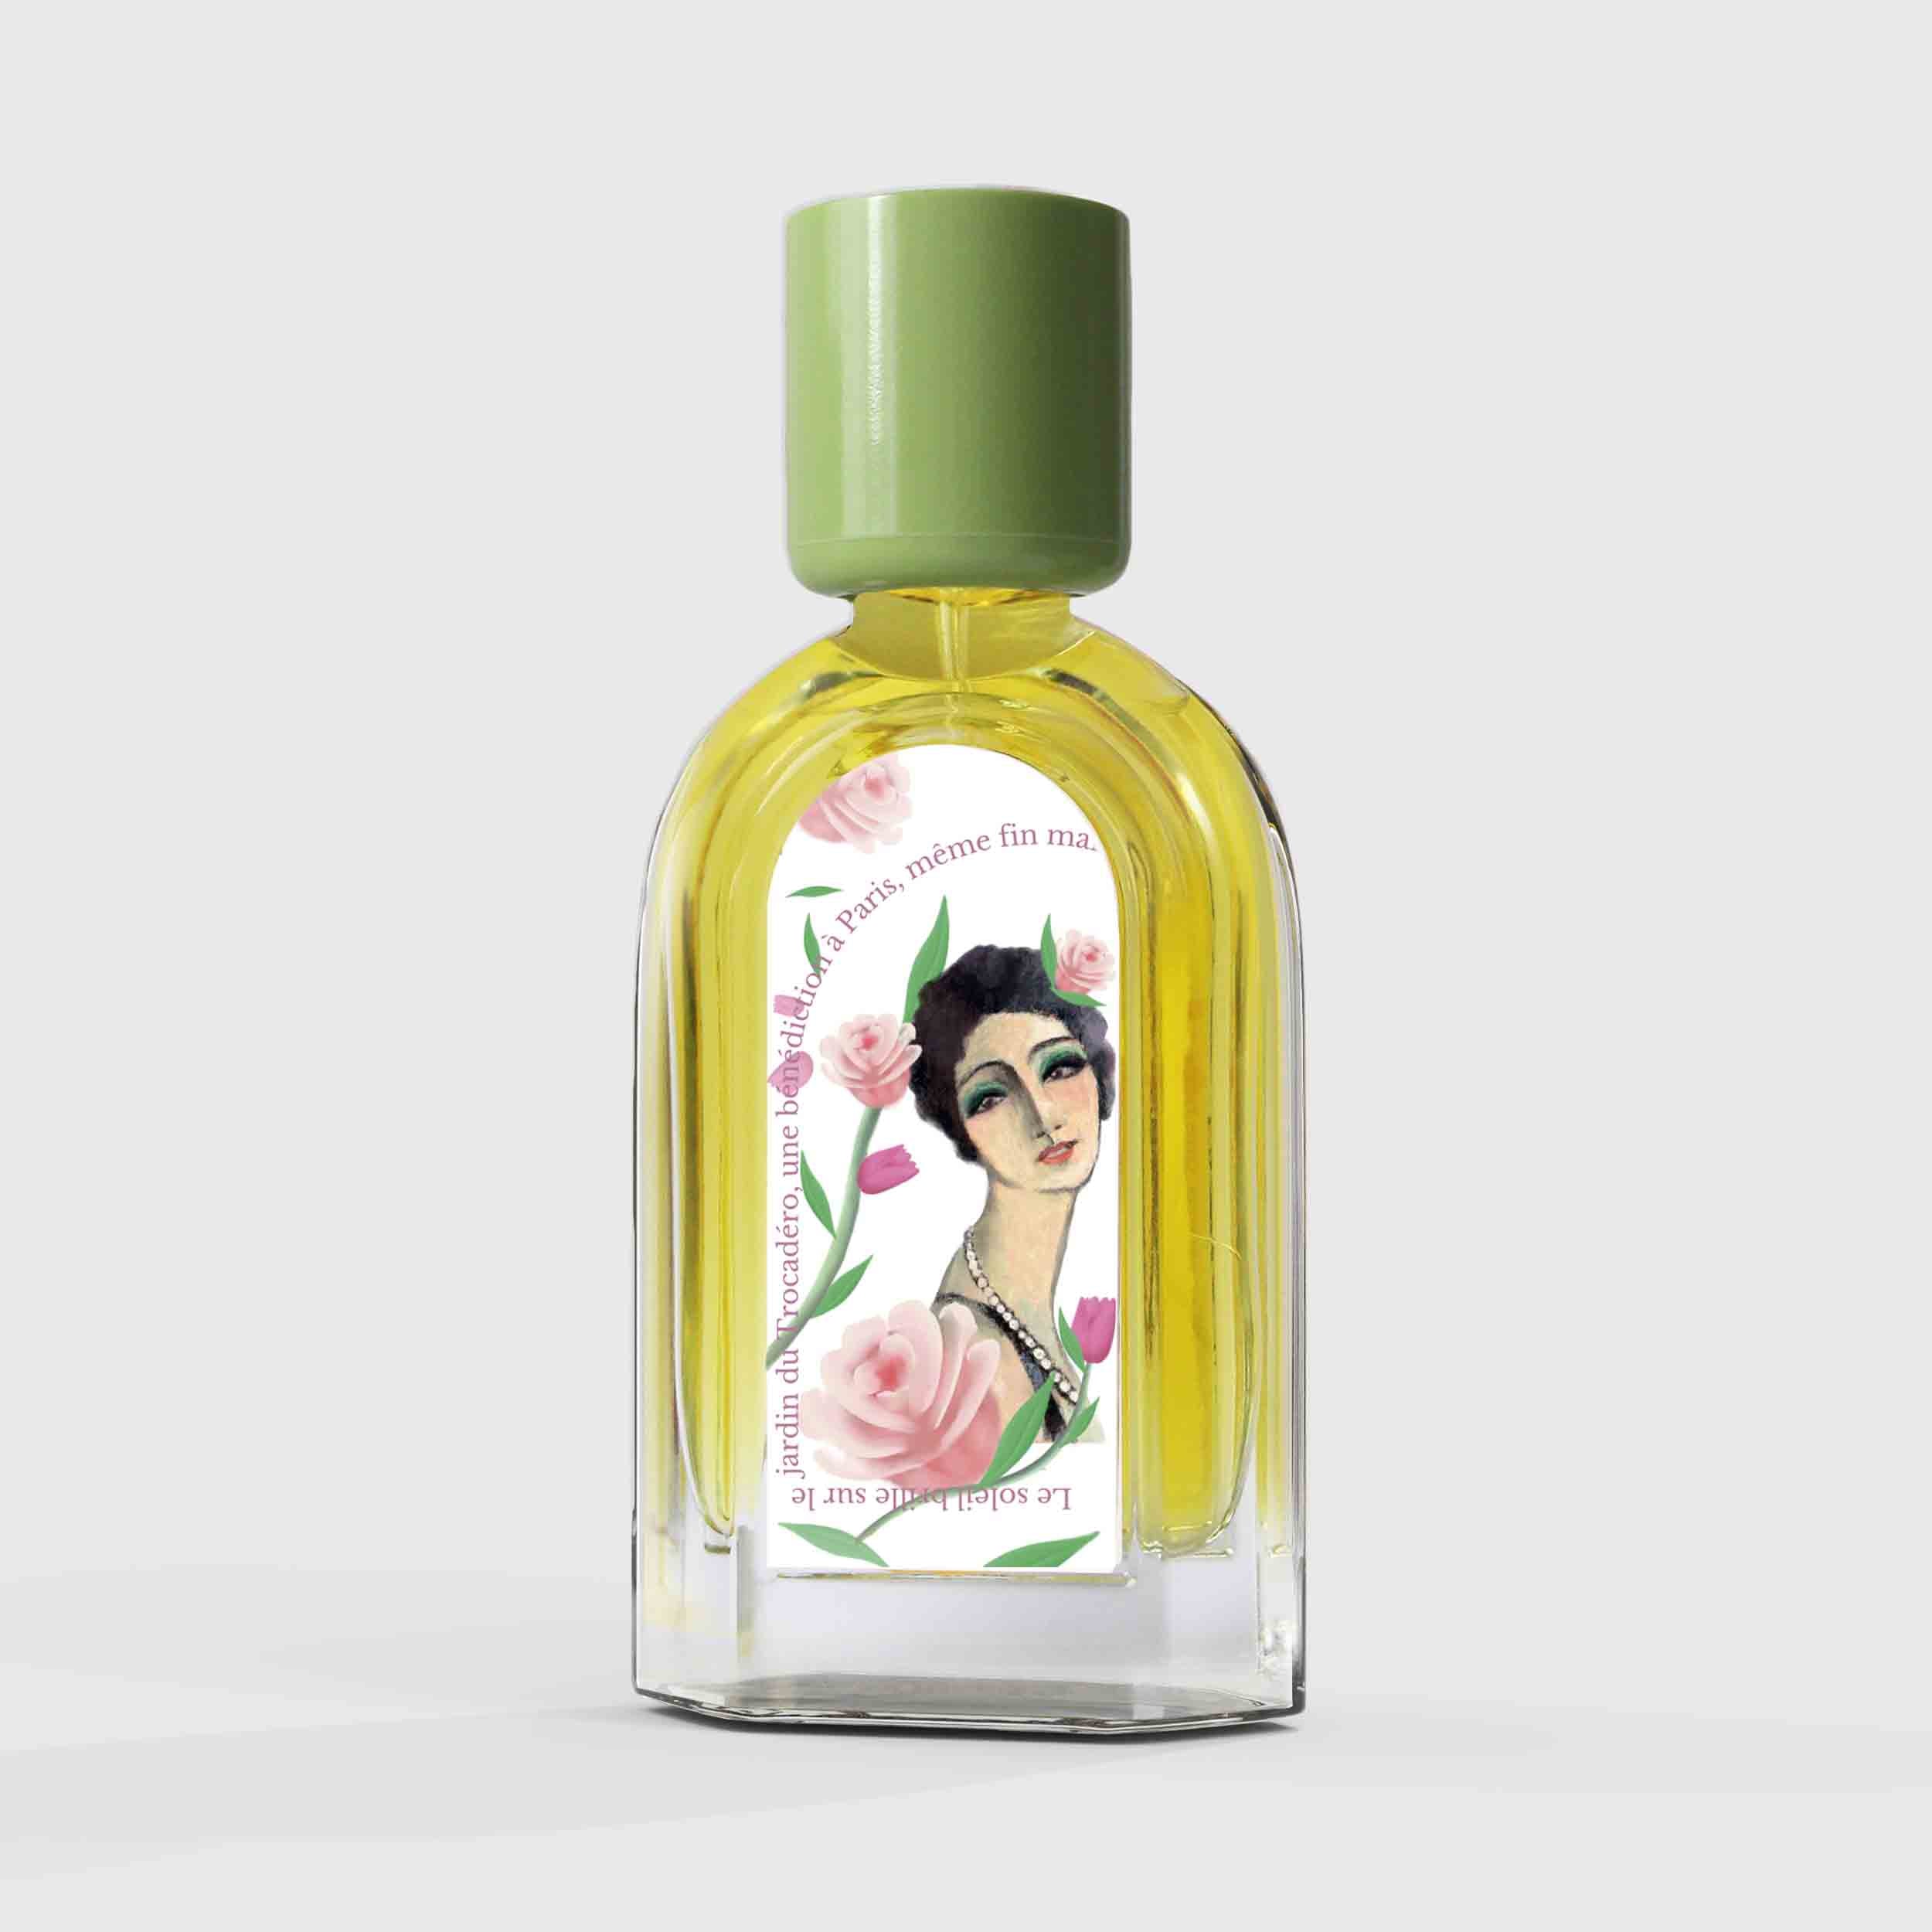 Rose Trocadéro Eau de Parfum 50ml Bottle by Le Jardin Retrouvé